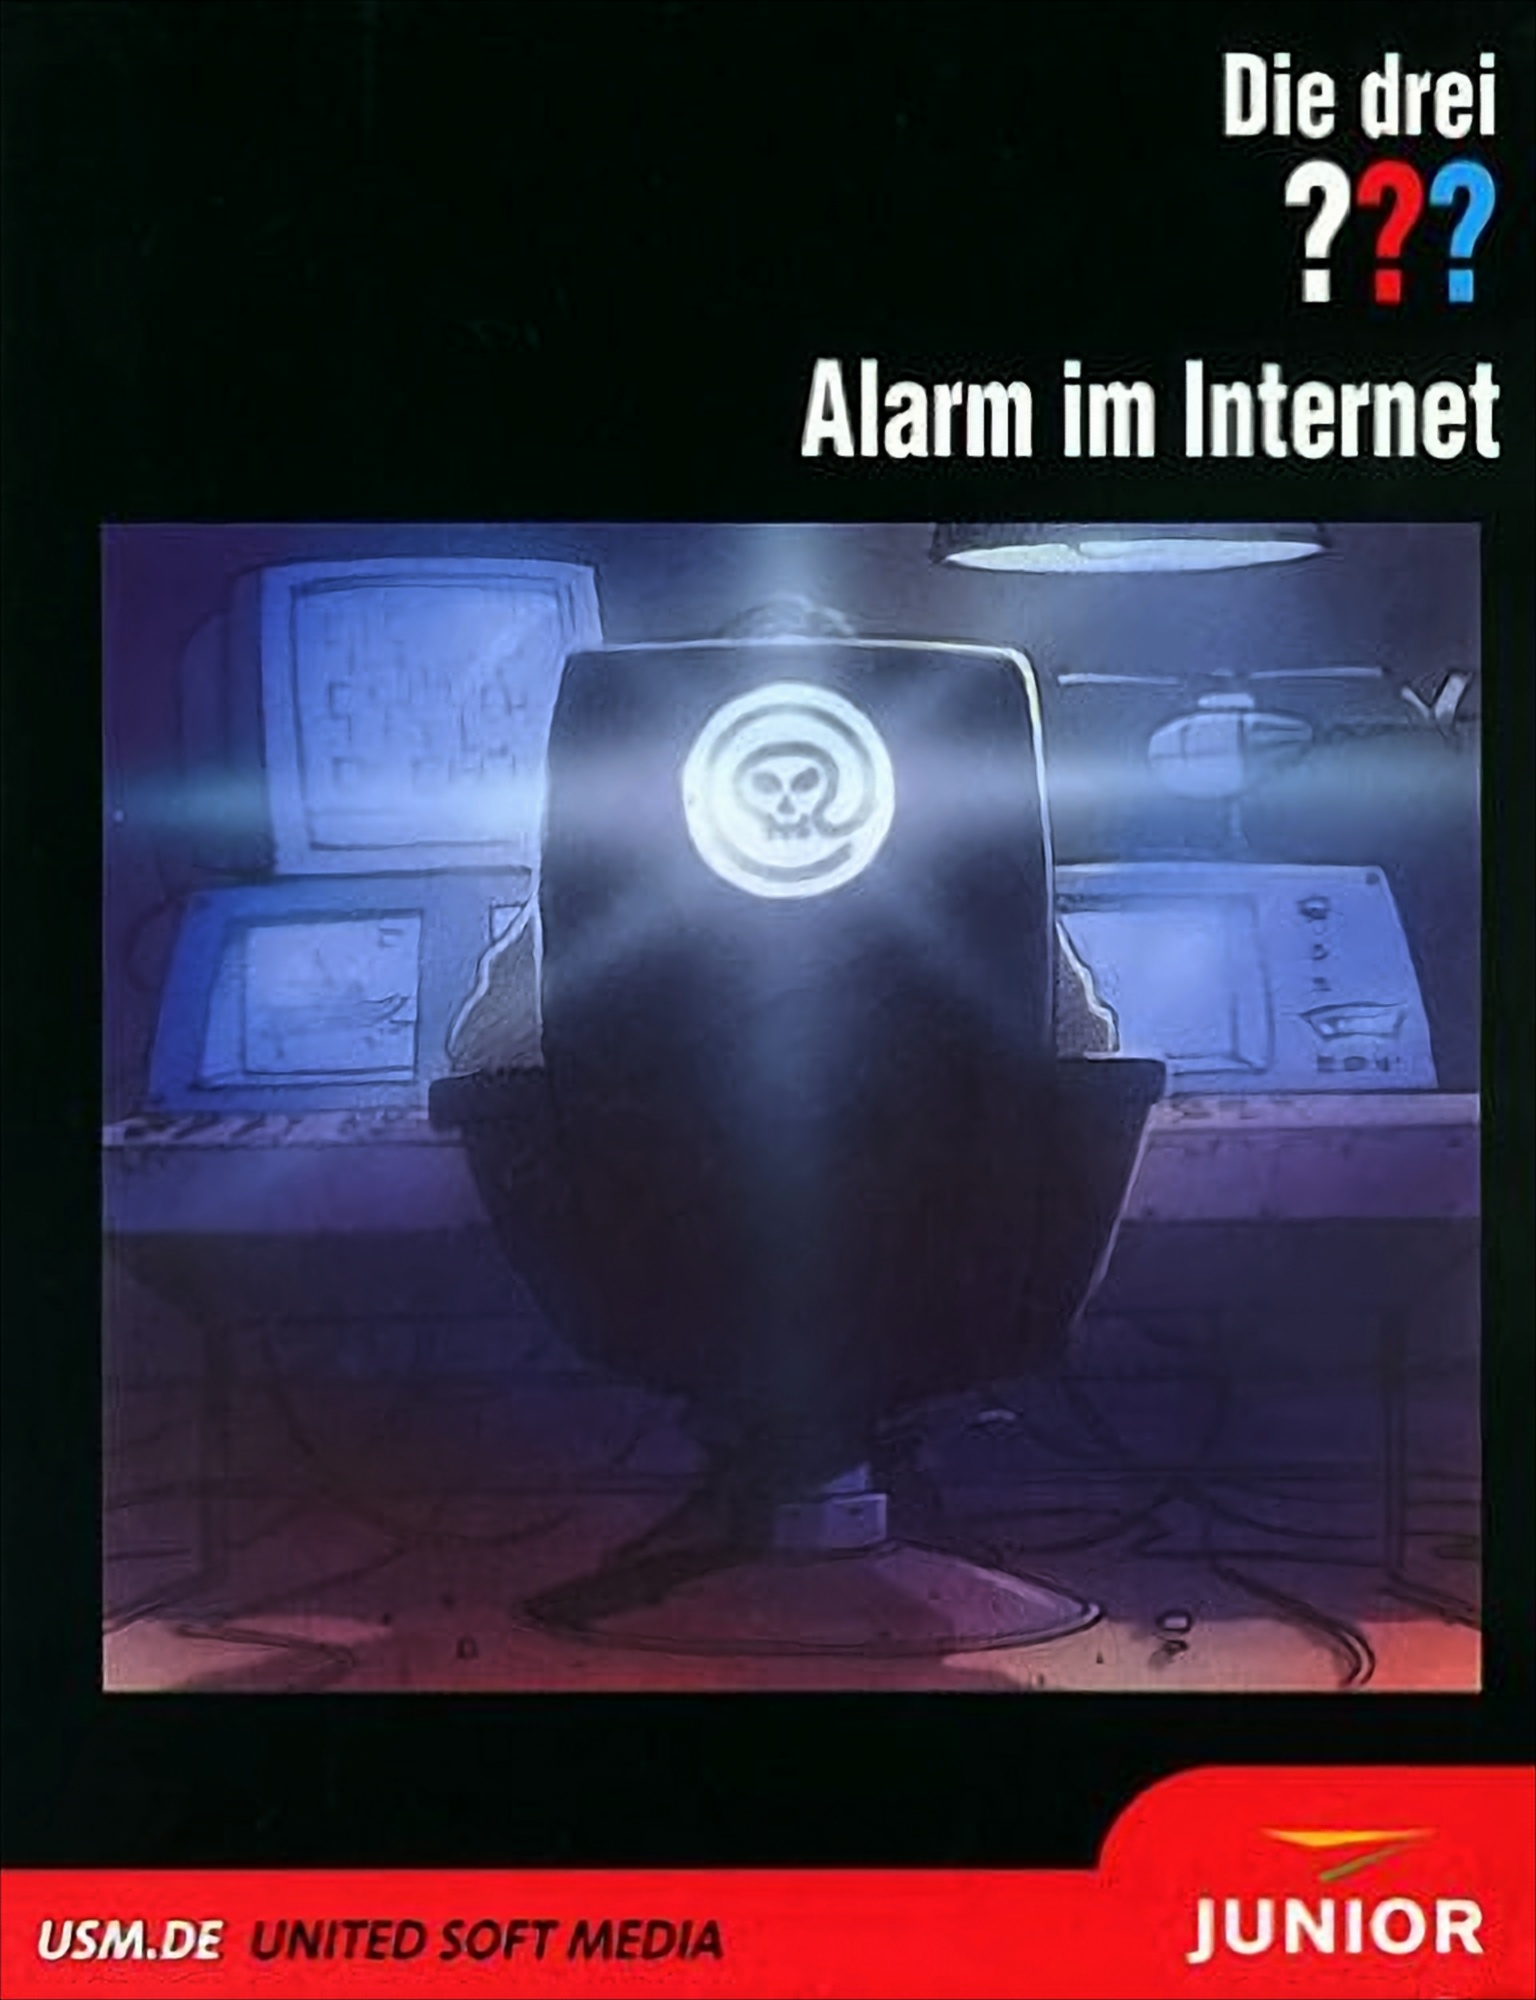 - Alarm [PC] ??? im Die drei Internet -